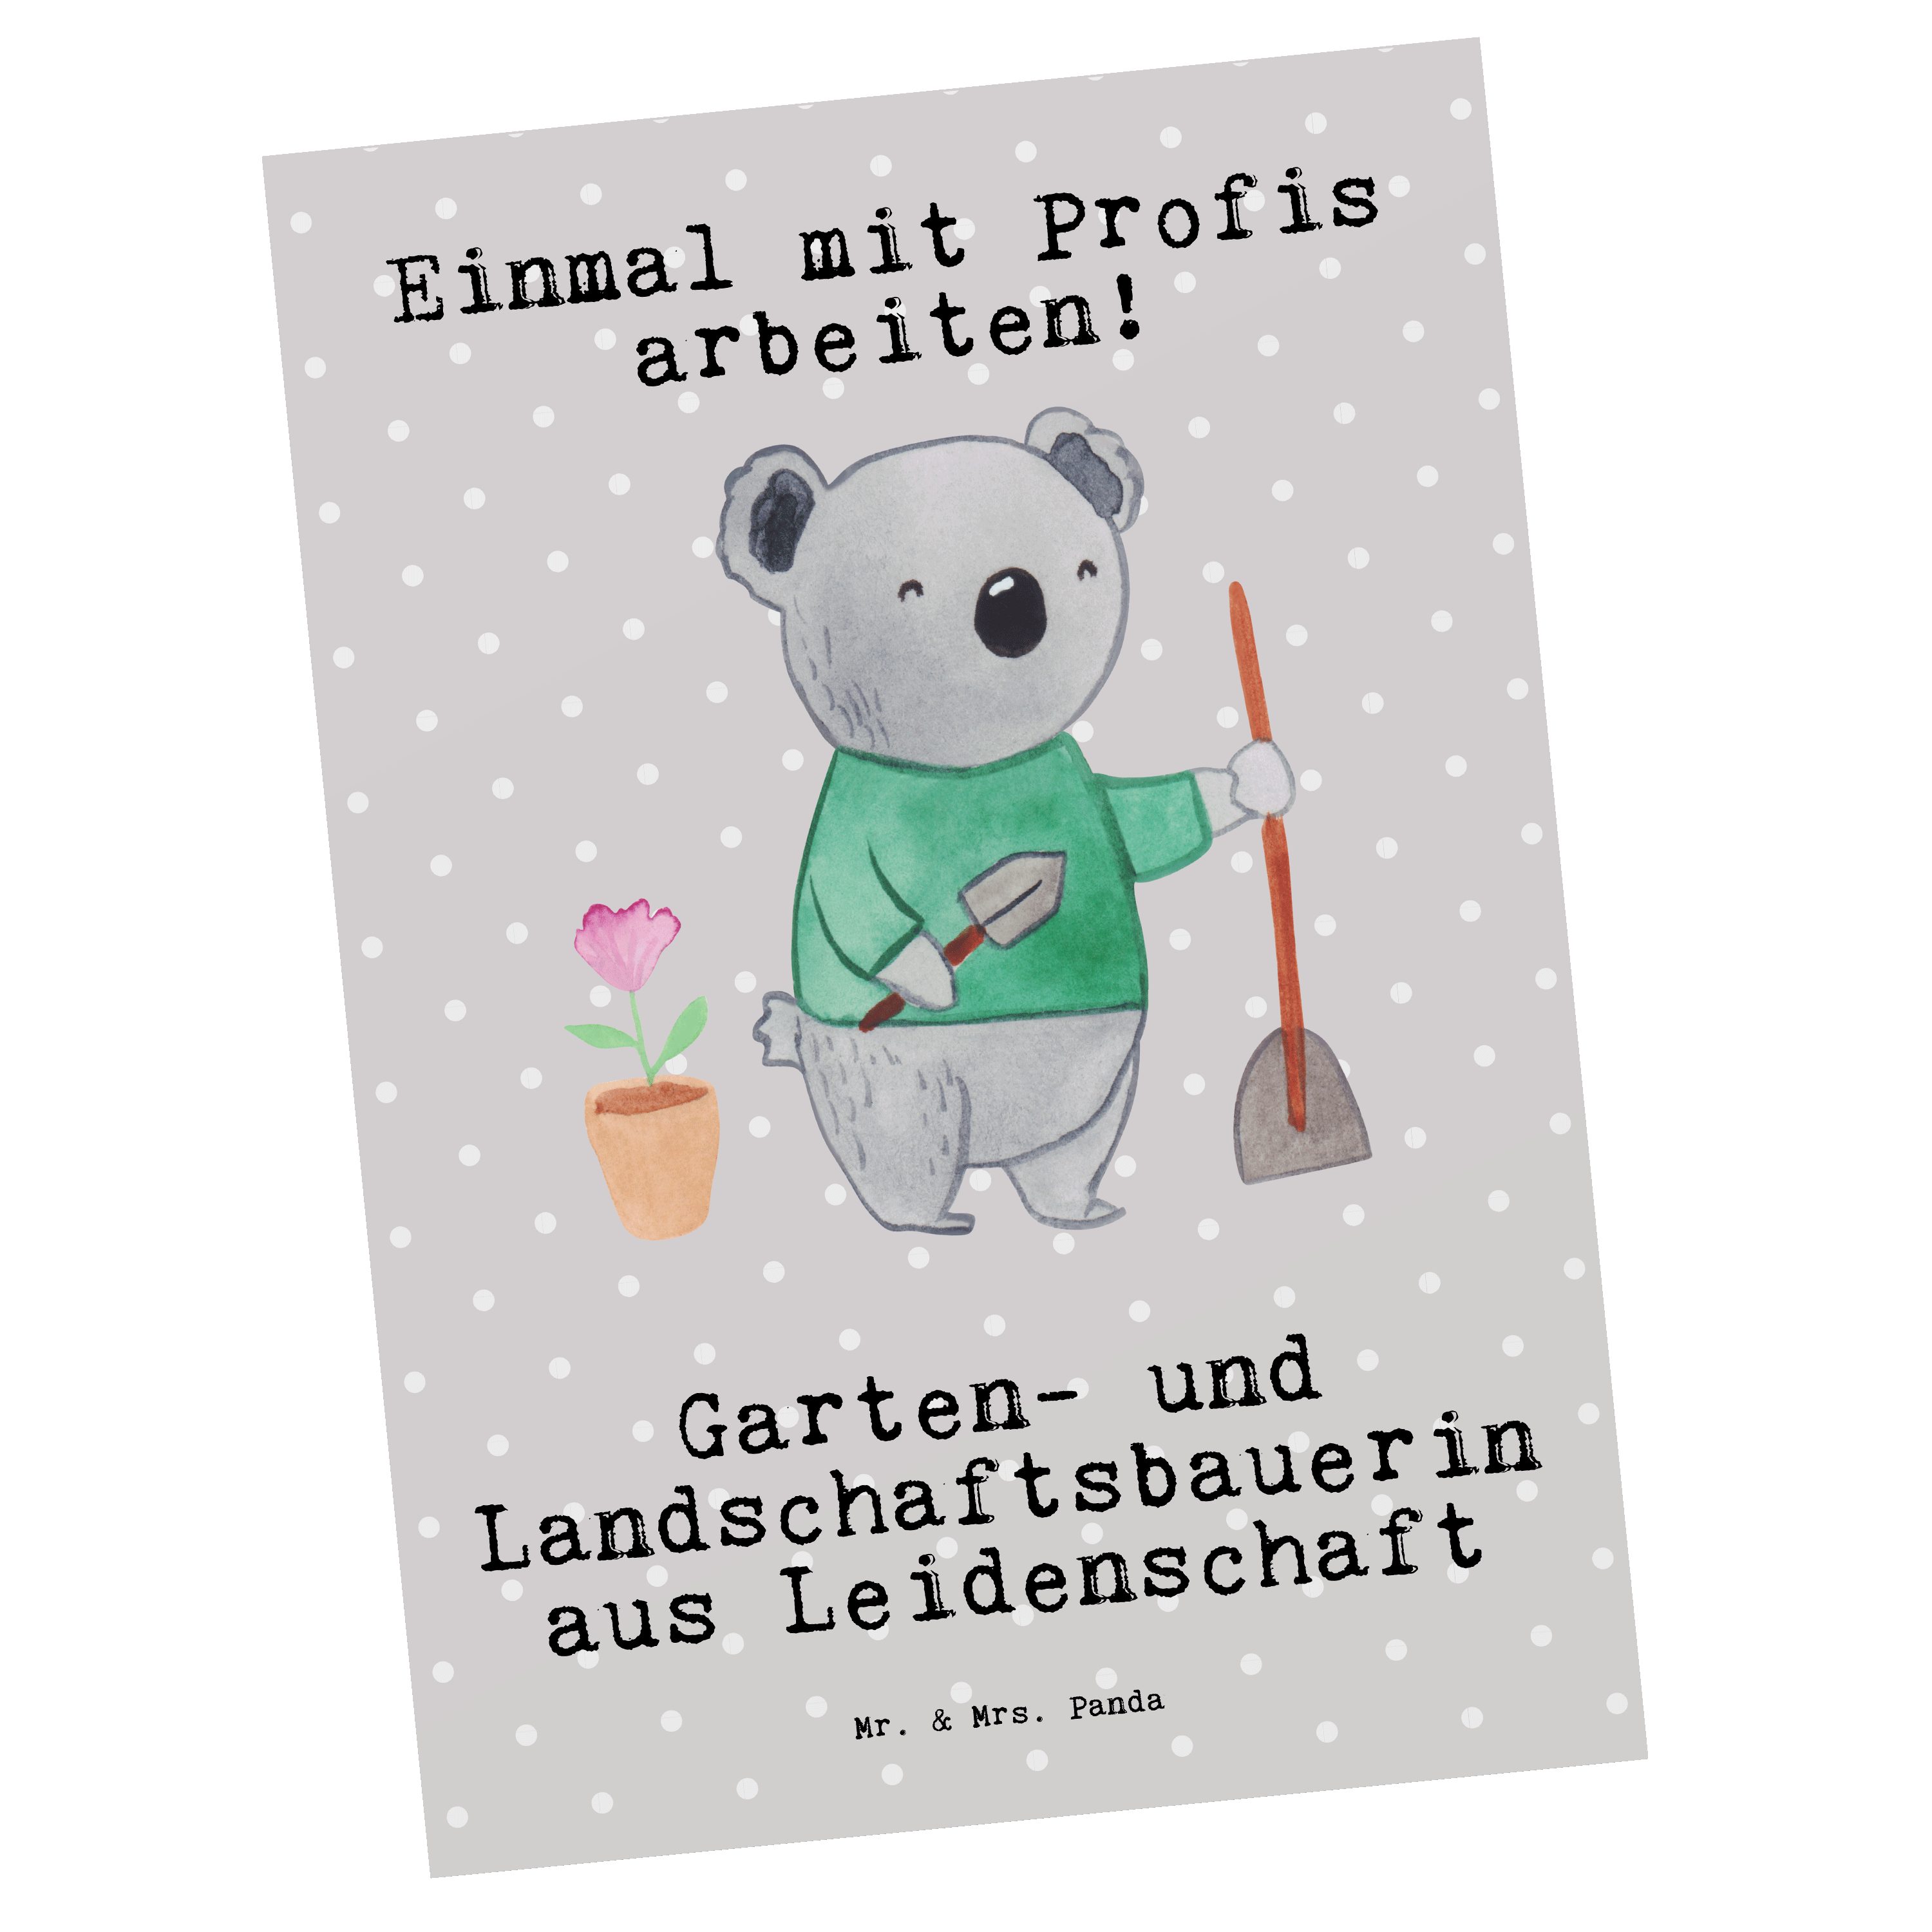 Mr. & Mrs. Panda Postkarte Garten- und Landschaftsbauerin aus Leidenschaft - Grau Pastell - Gesc